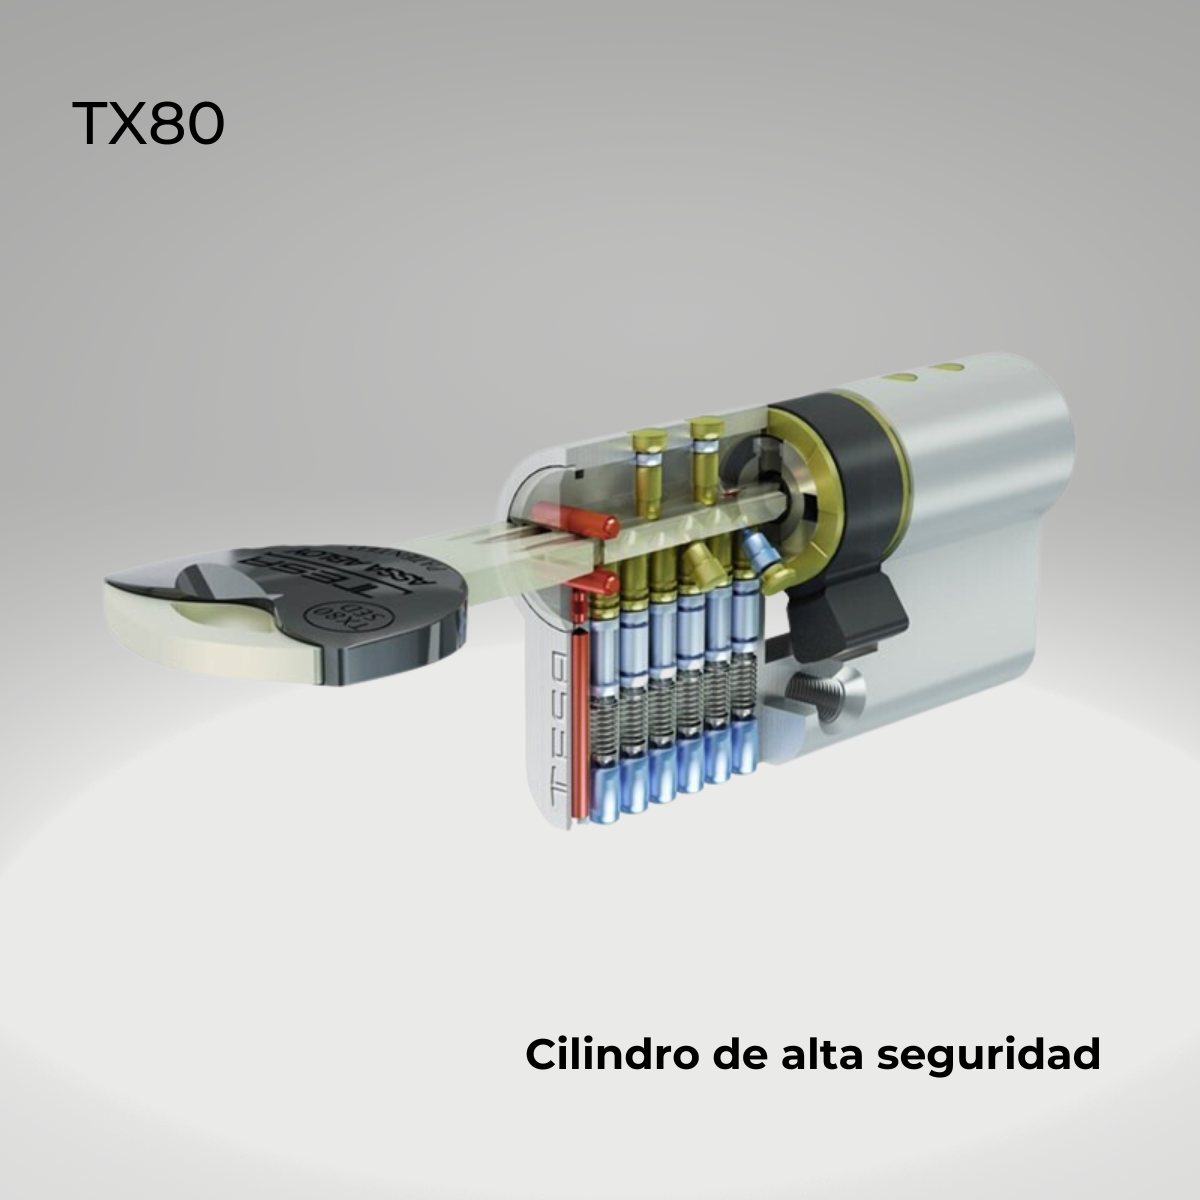 Cilindro de alta seguridad TX80